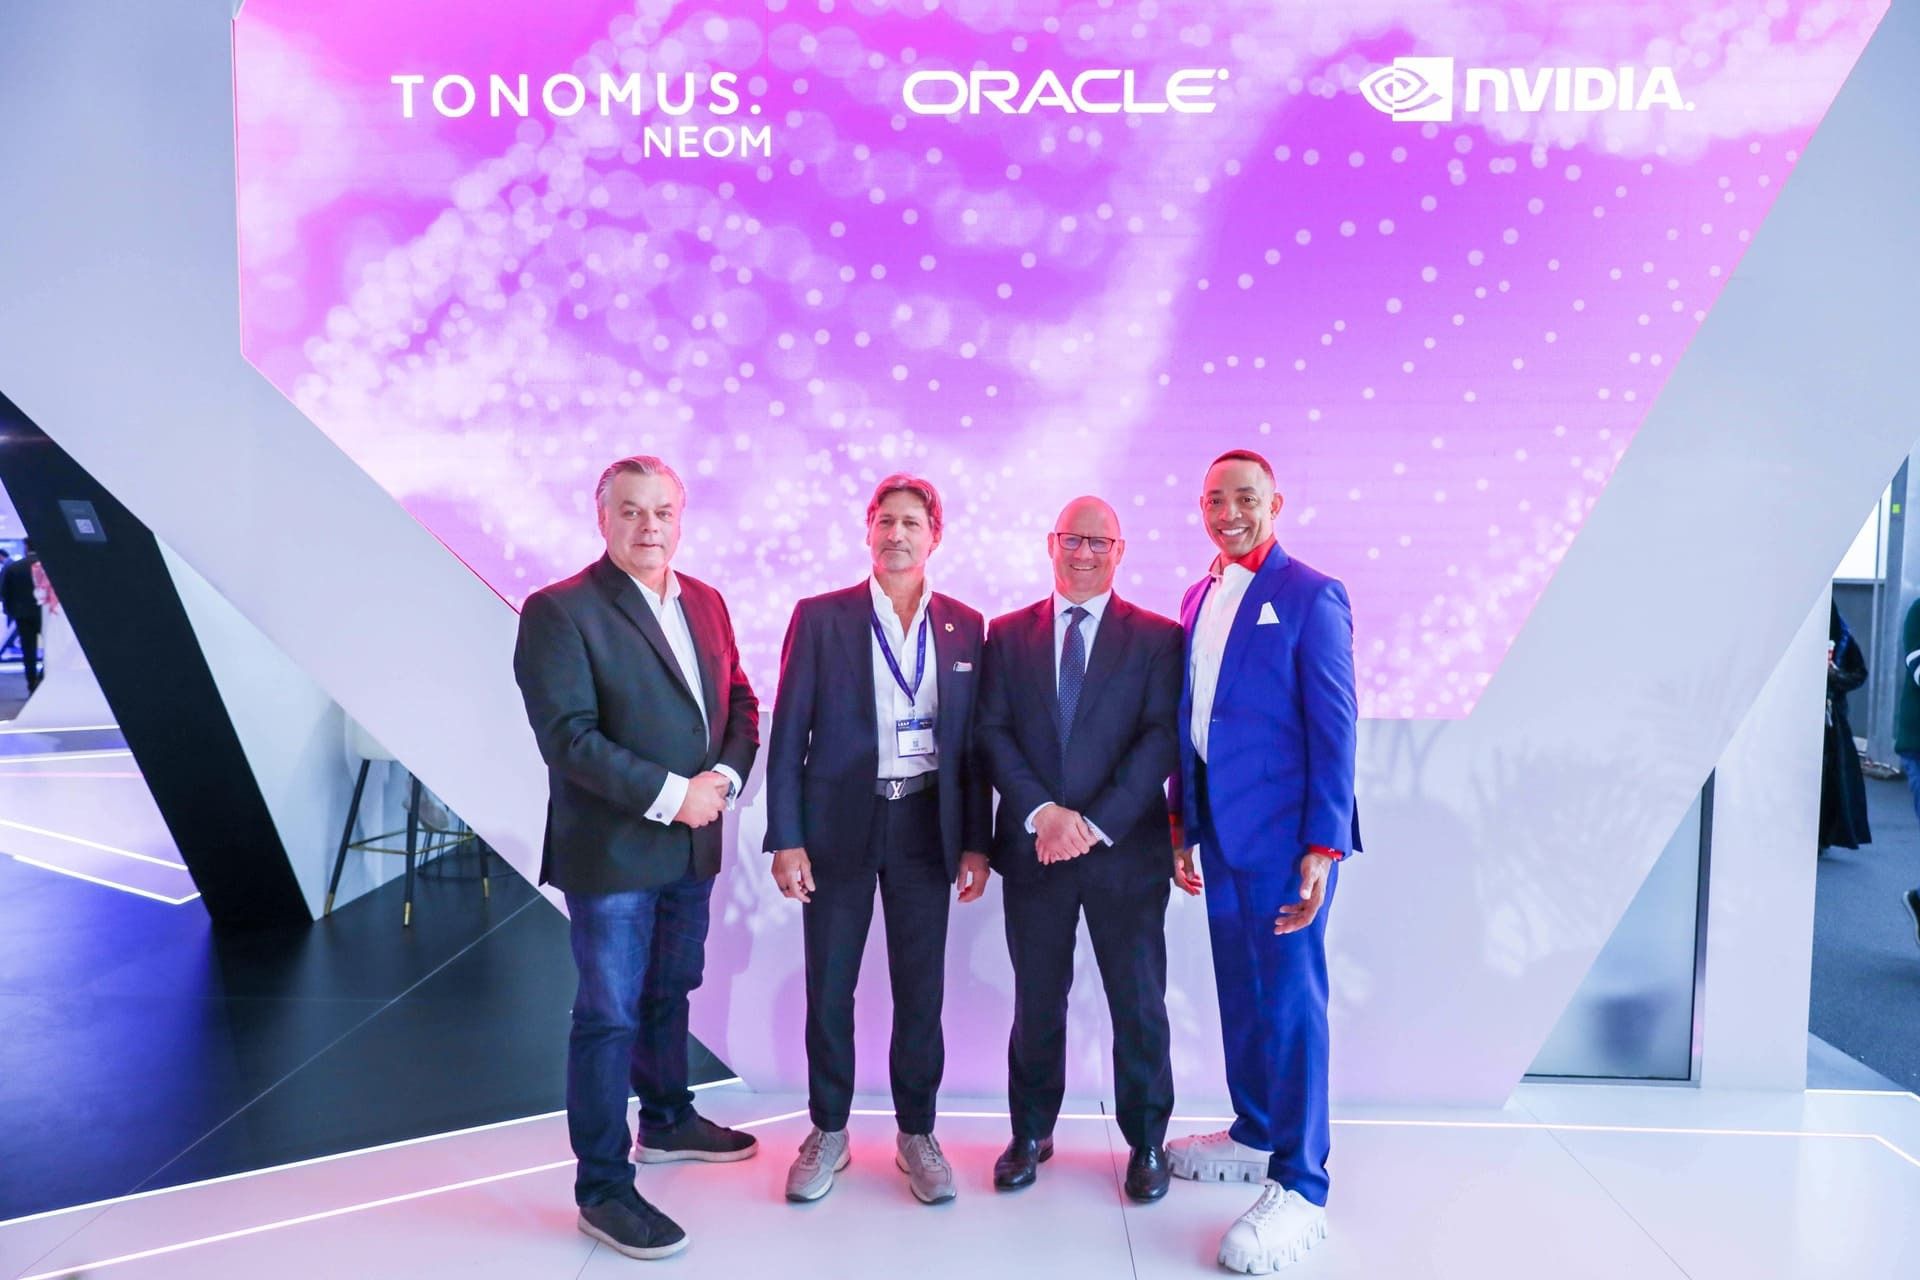 TONOMUS сотрудничает с Oracle и NVIDIA для ускорения внедрения ИИ в NEOM и Саудовской Аравии и расширения возможностей инноваций